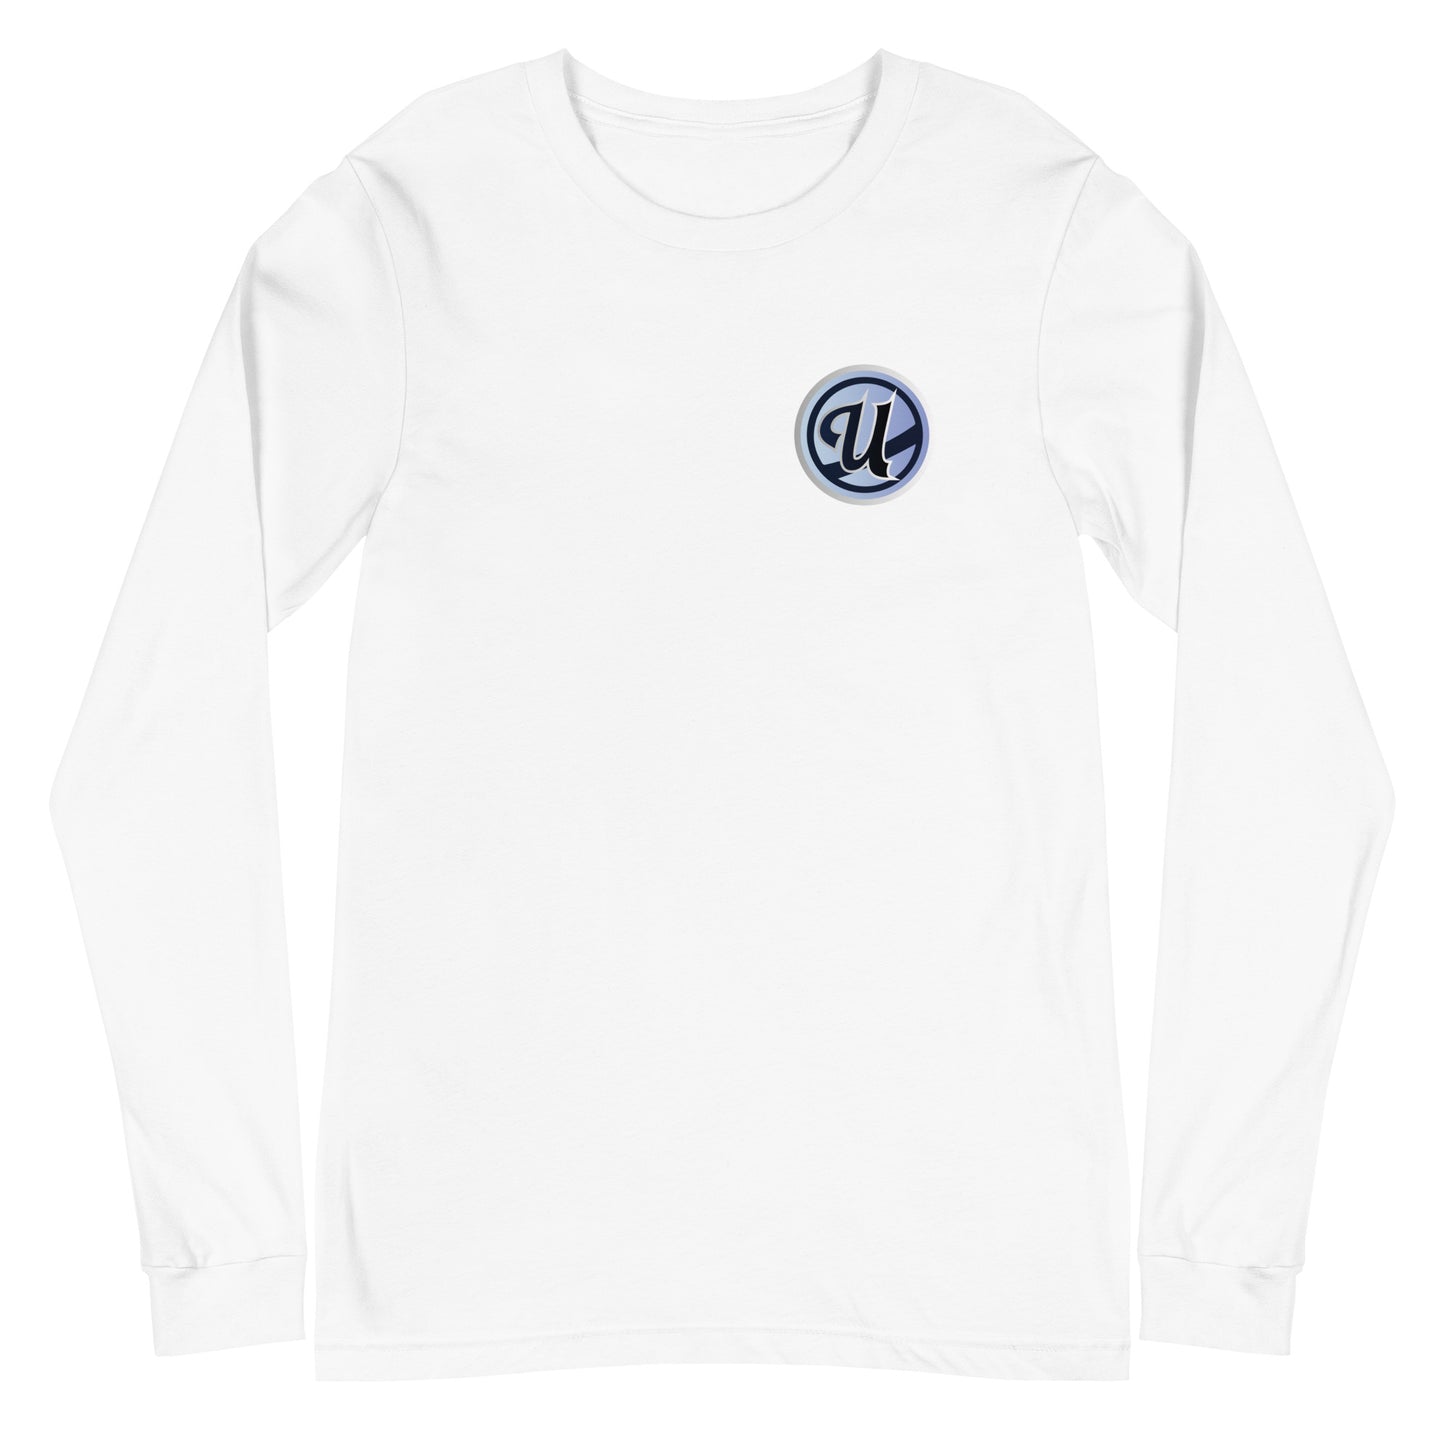 UAHL Winter Series - Saucer Long Sleeve Shirt